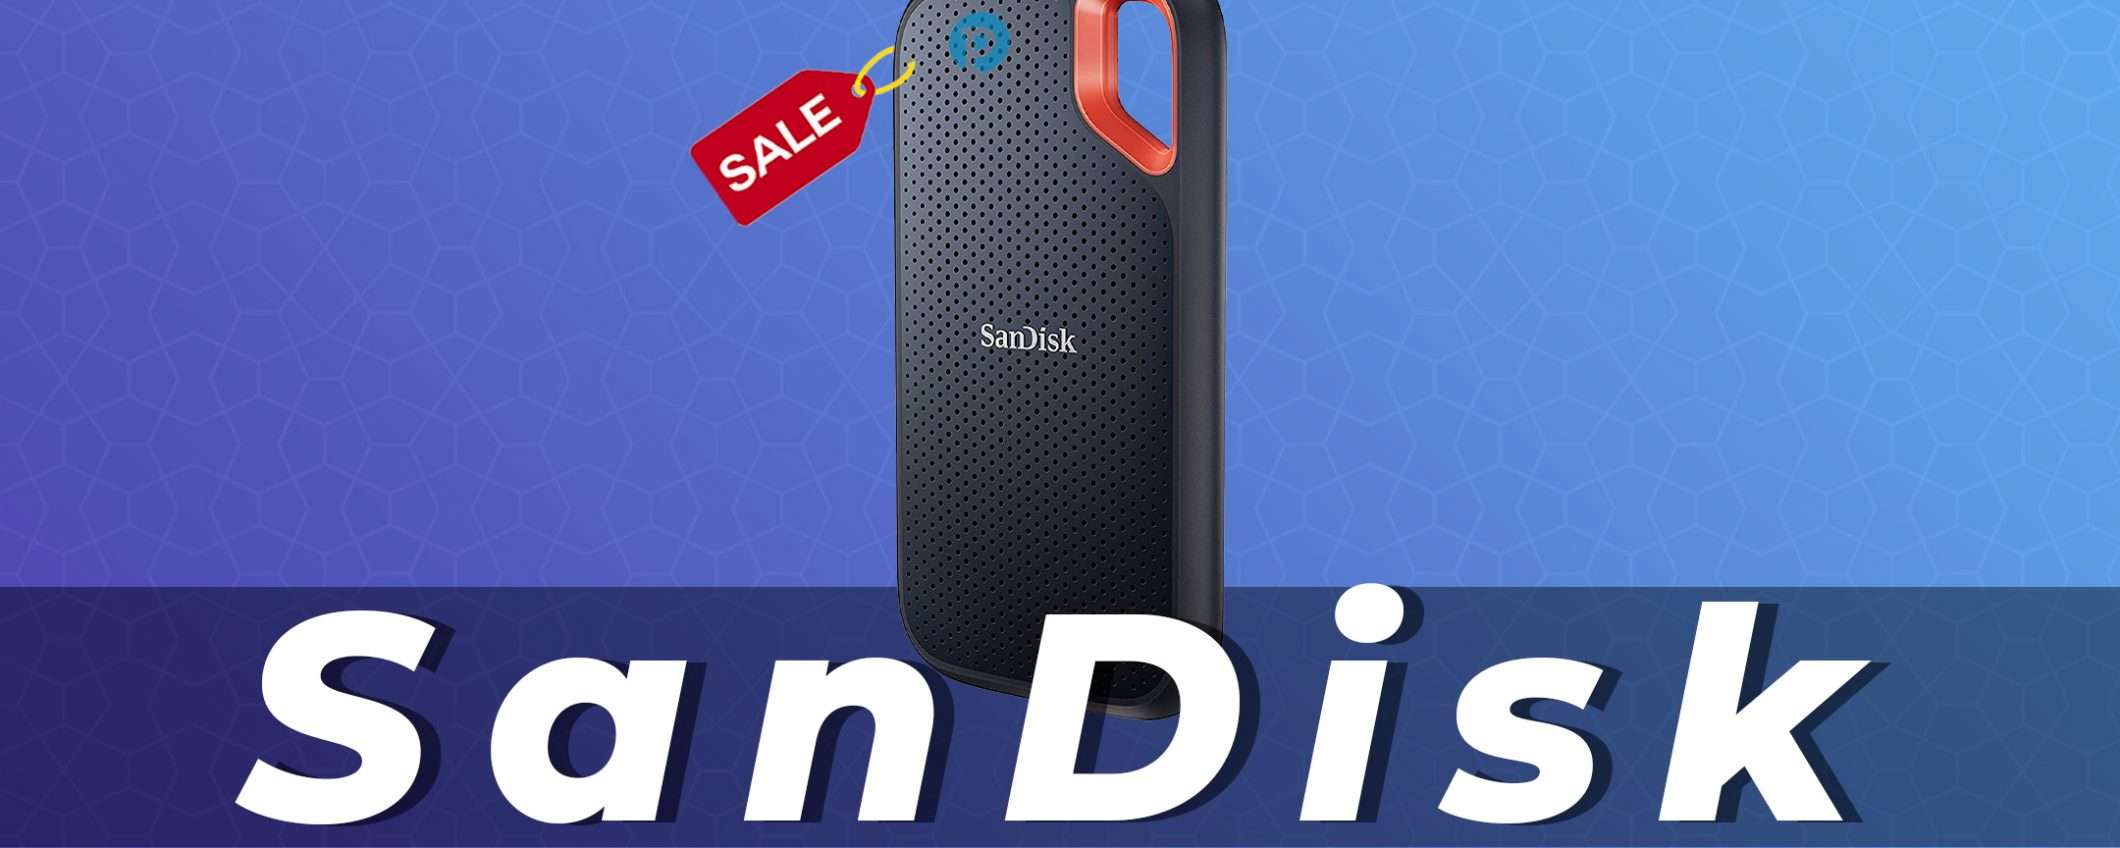 SanDisk Extreme SSD da 500GB, oggi al 20% di sconto : Offerte Amazon